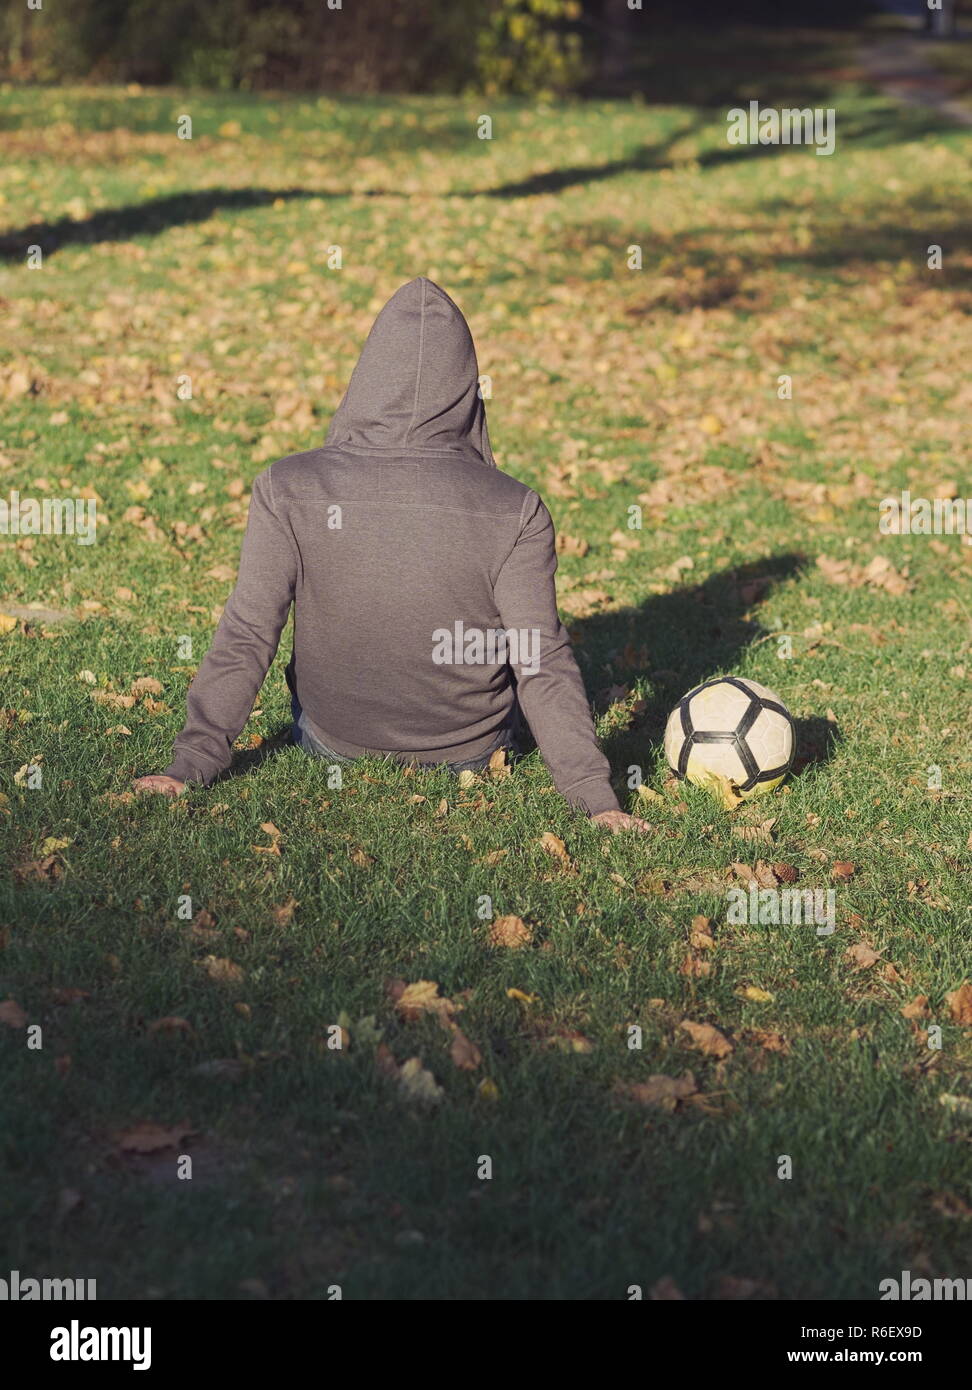 Fußball-Spieler posiert mit Fußball im Park an einem sonnigen Herbsttag Stockfoto